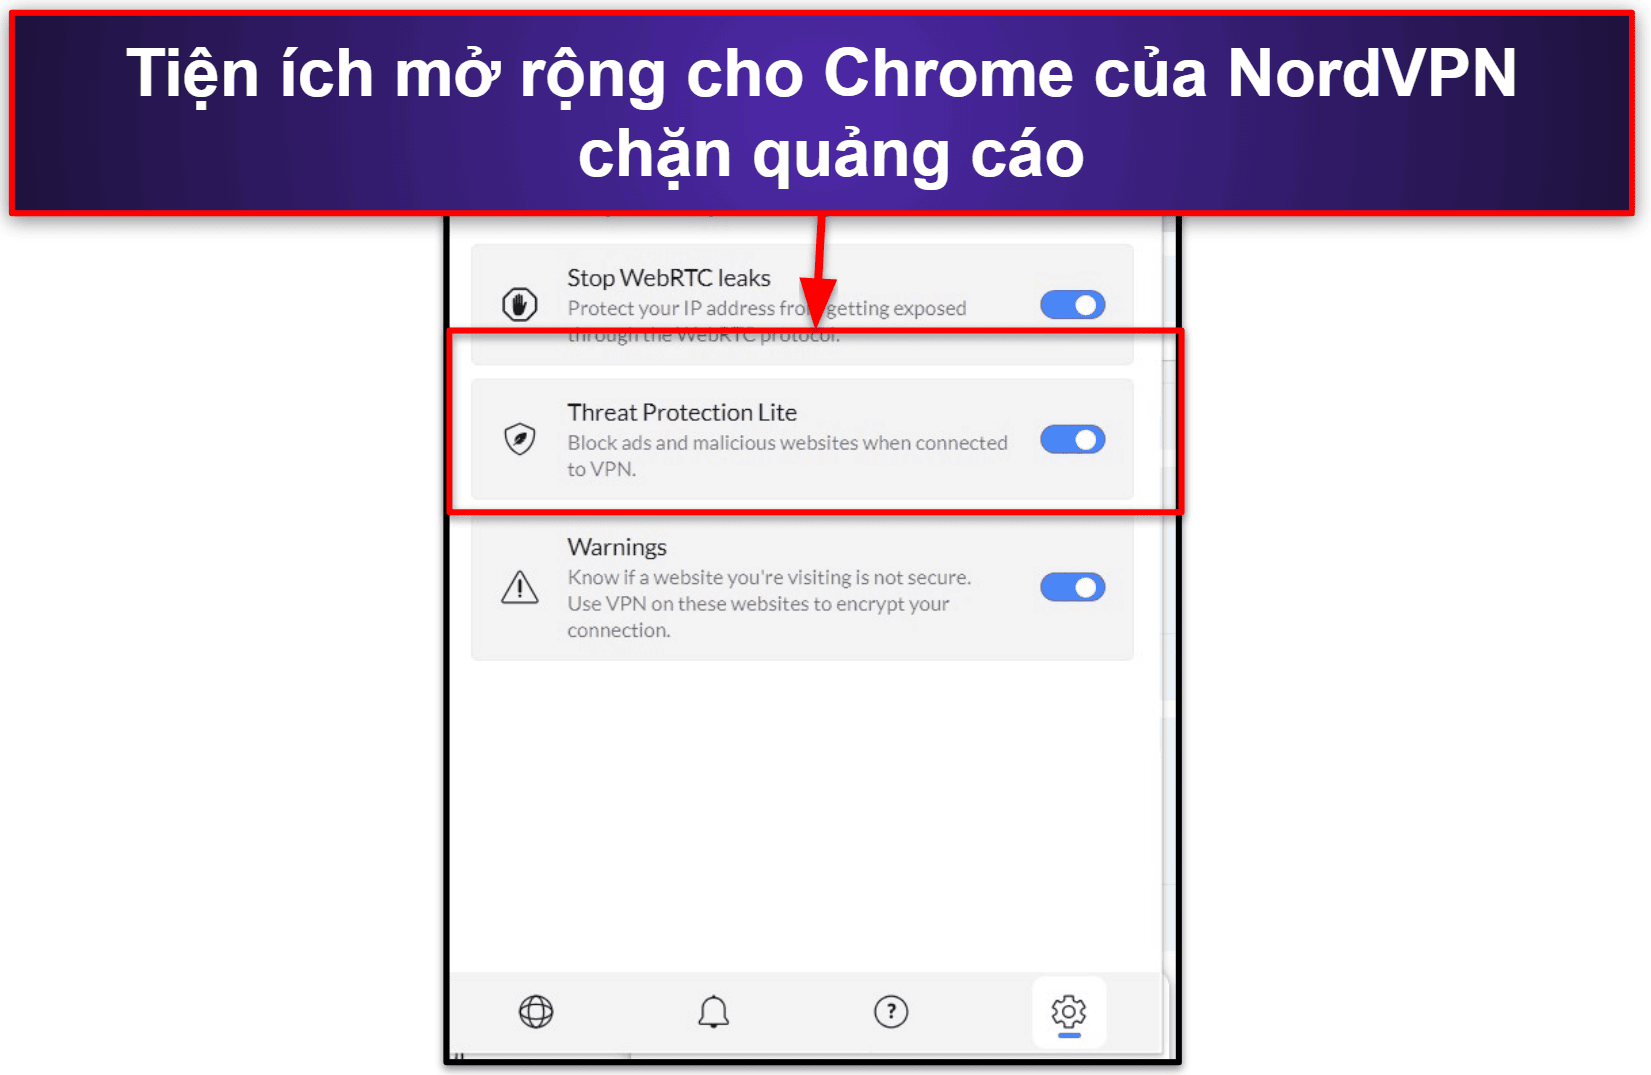 🥉3. NordVPN — Tiện ích mở rộng cho Chrome nhanh với các tính năng bảo mật mạnh mẽ